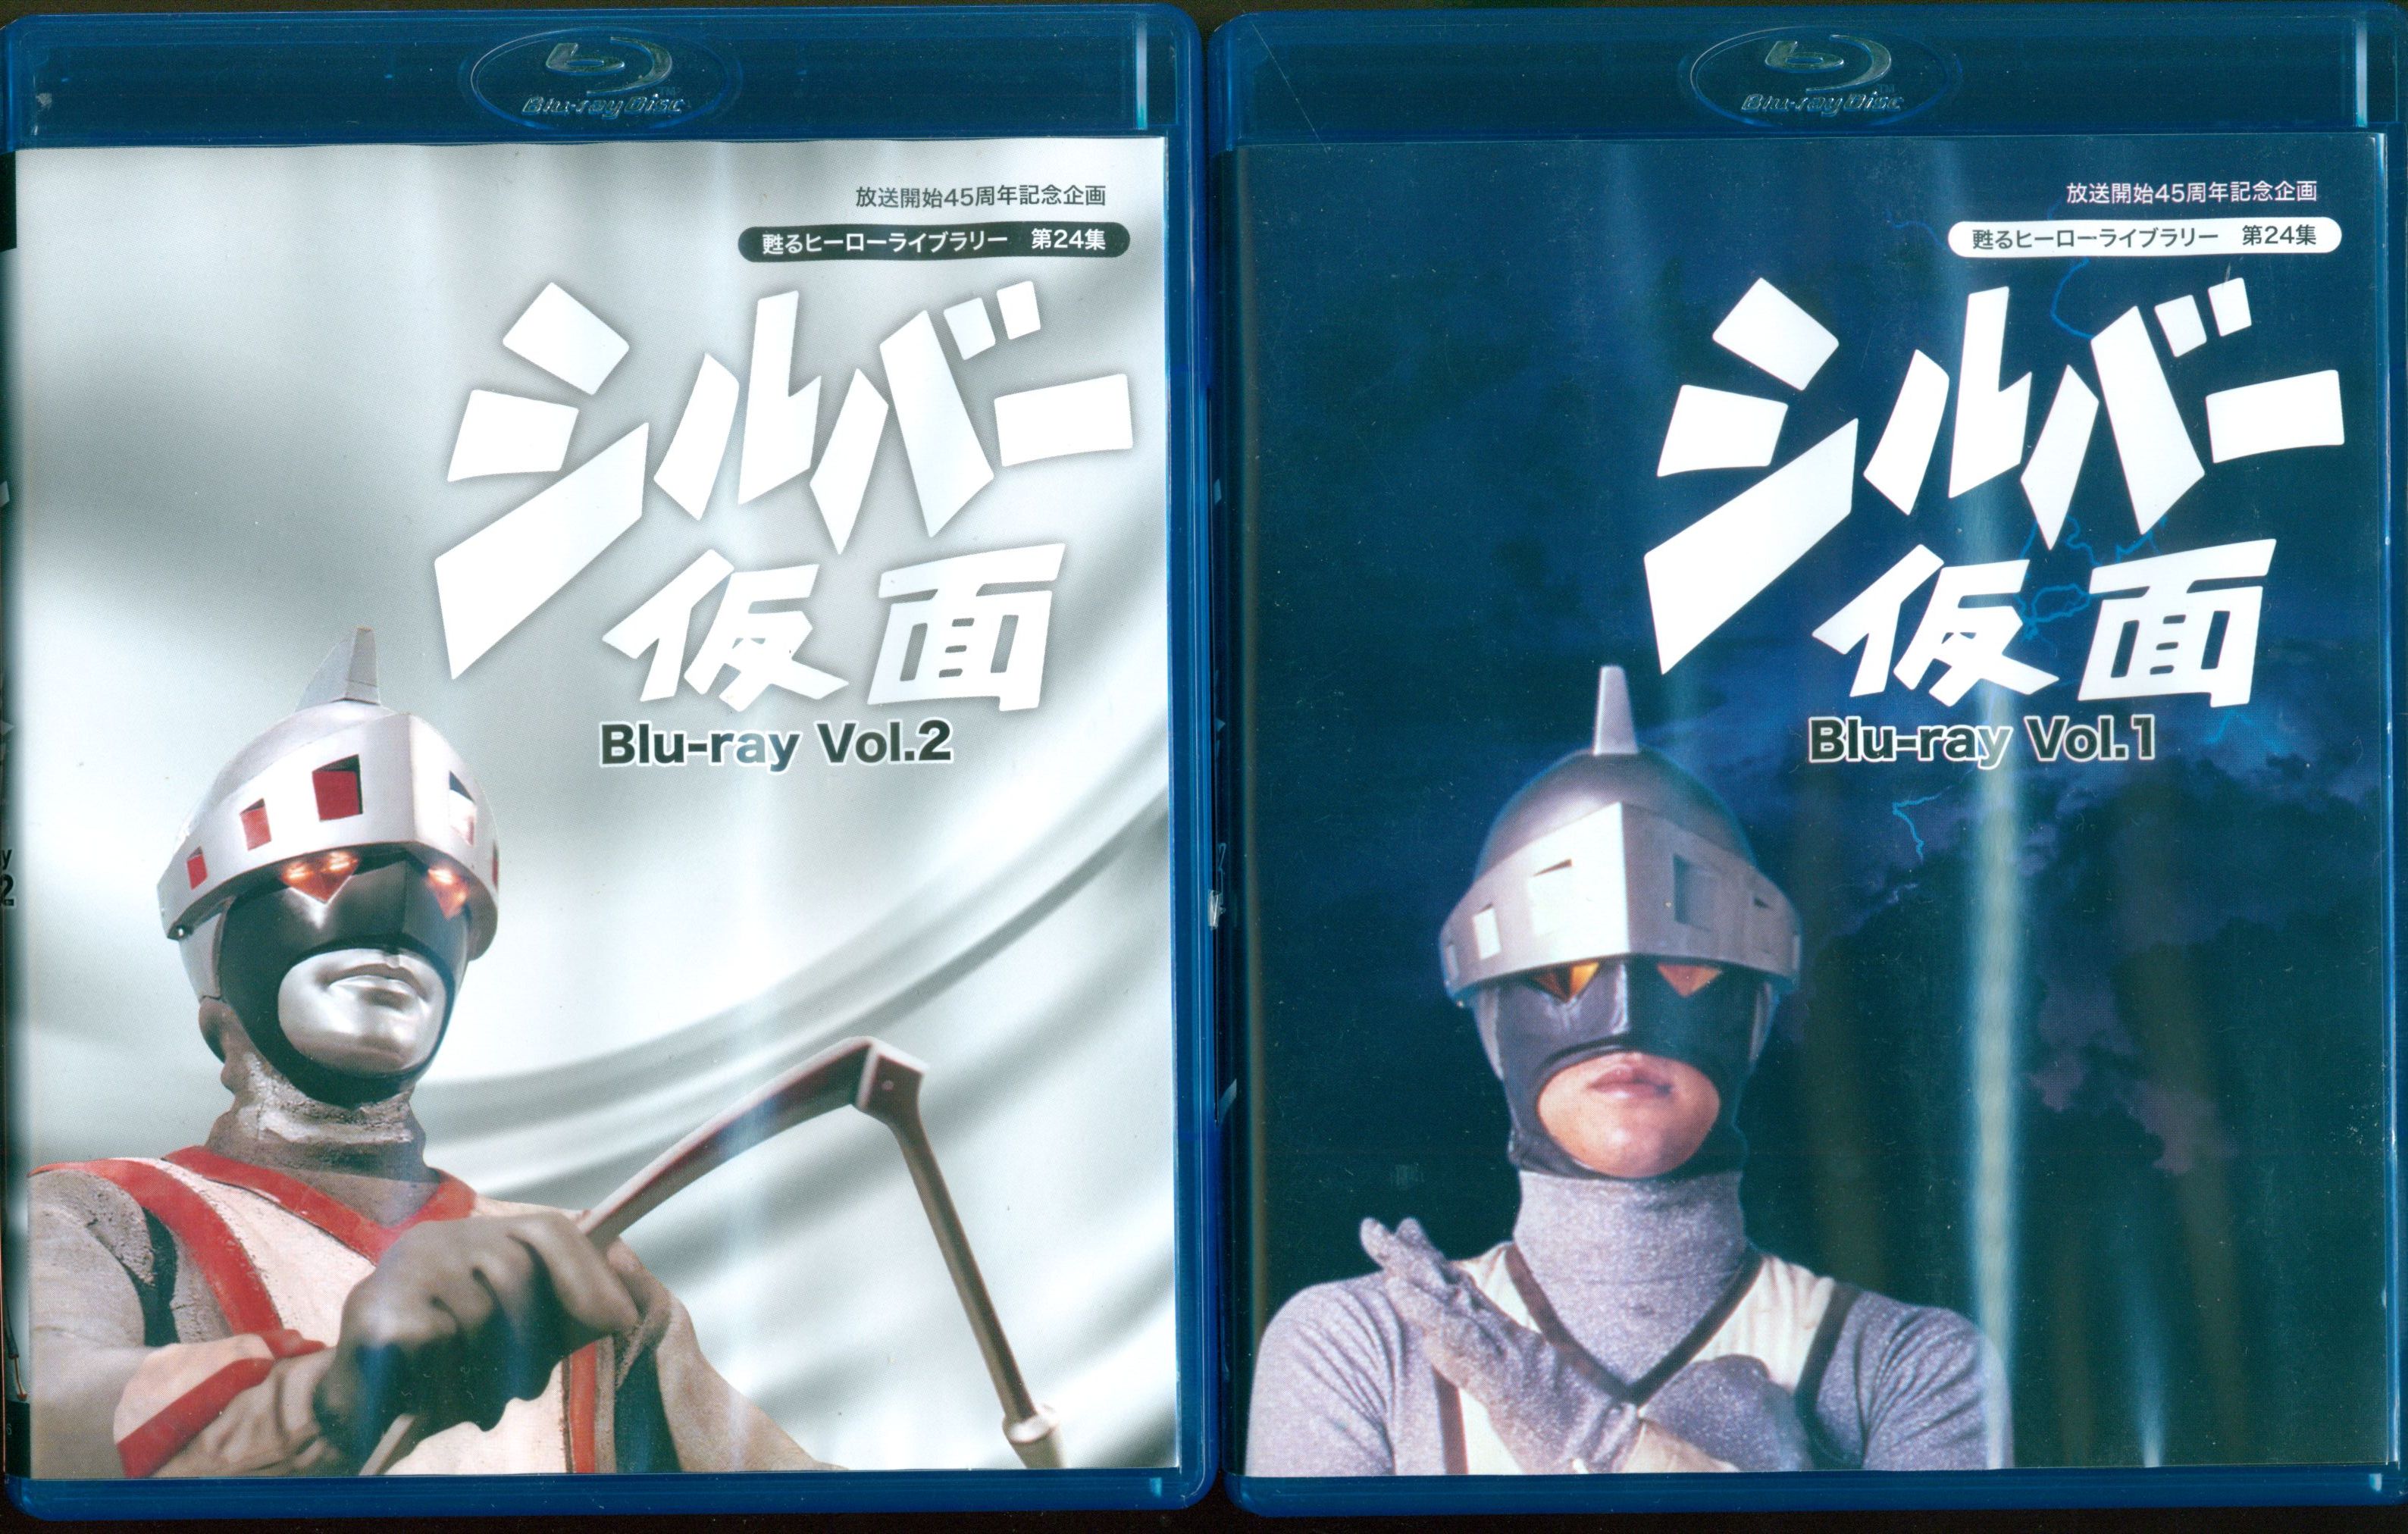 甦るヒーローライブラリー 第24集 シルバー仮面 Vol.1 Vol.2 - ブルーレイ